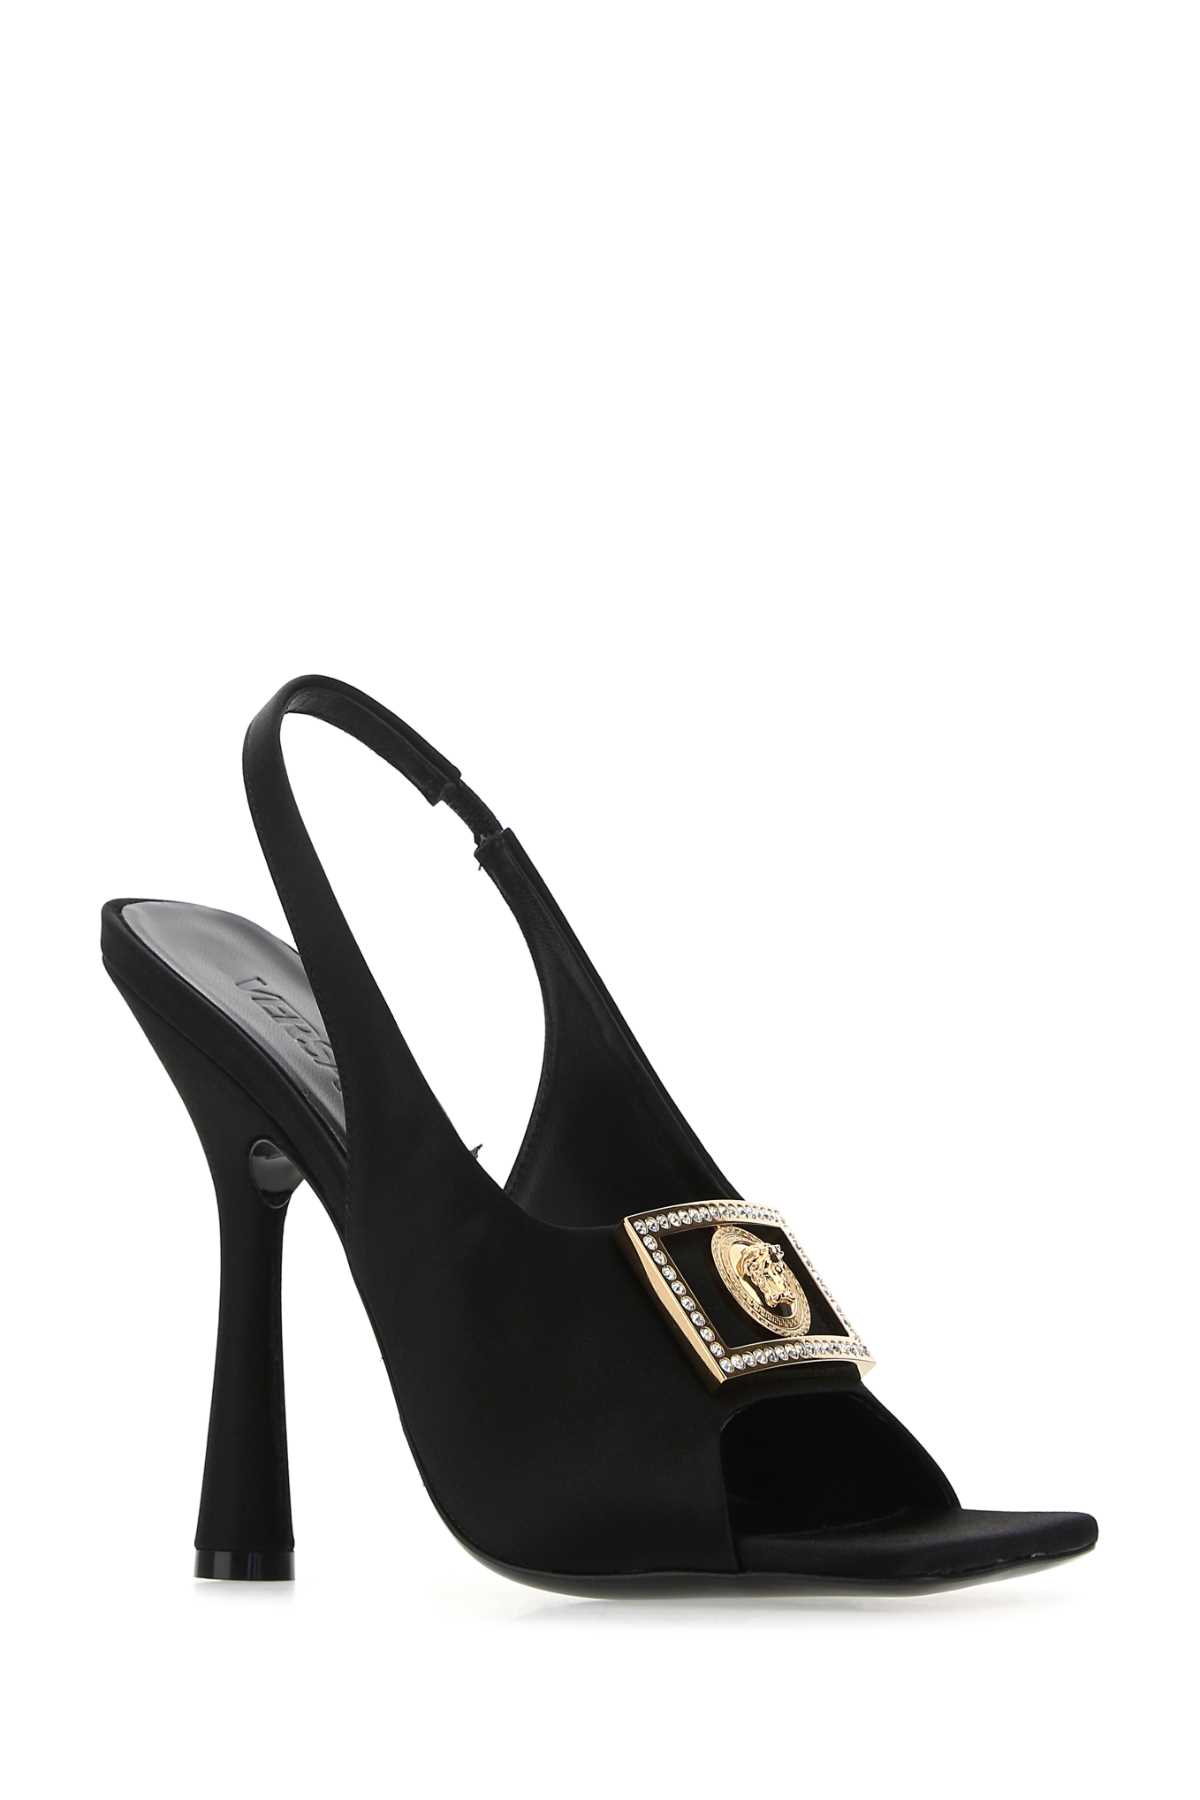 Shop Versace Black Satin Sandals In 1b00v